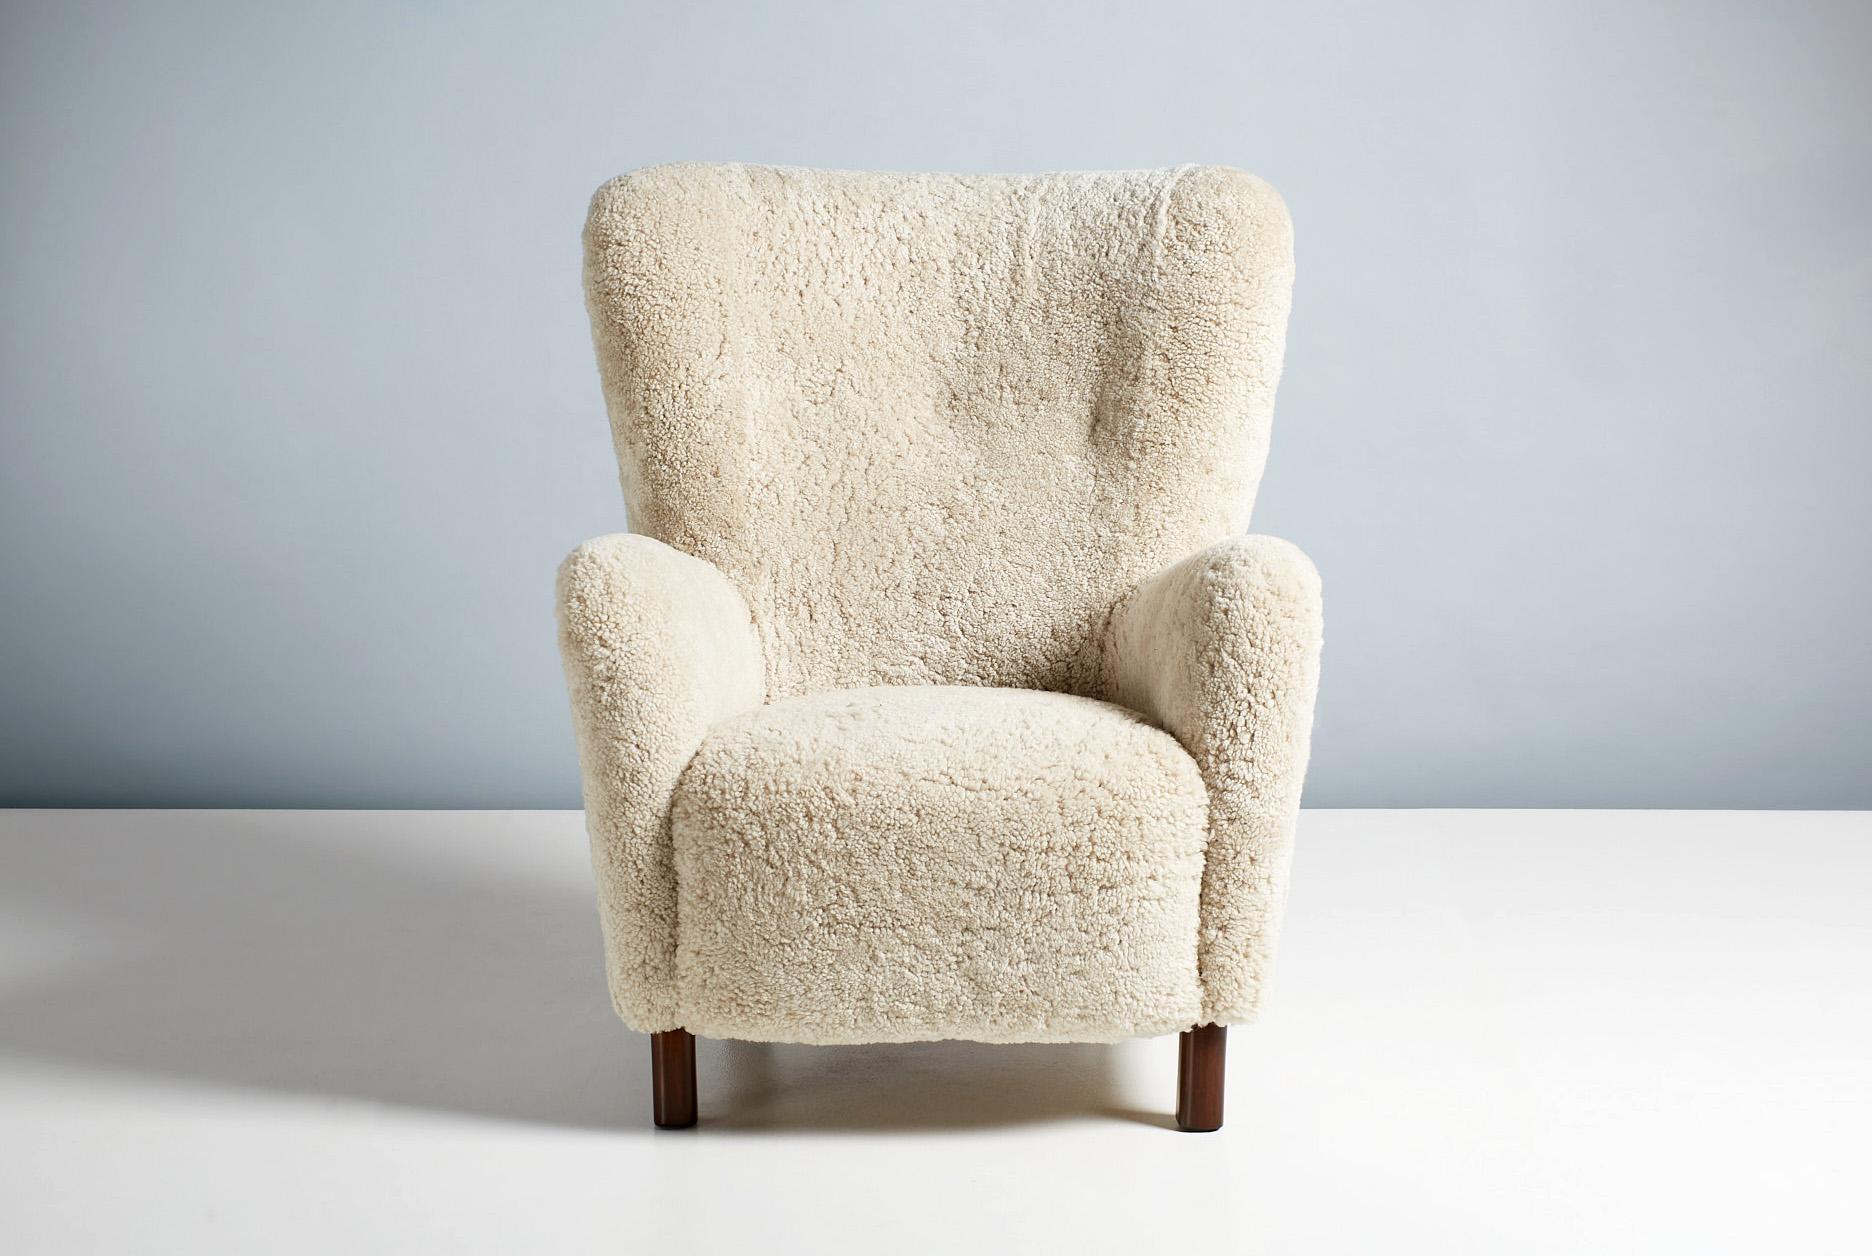 Chaise longue modèle 1664 produite par Fritz Hansen au Danemark dans les années 1940-1950. Ce modèle est similaire à l'emblématique fauteuil 1669 et présente un dossier légèrement plus haut. Les pieds sont en bois de hêtre teinté et la chaise a été